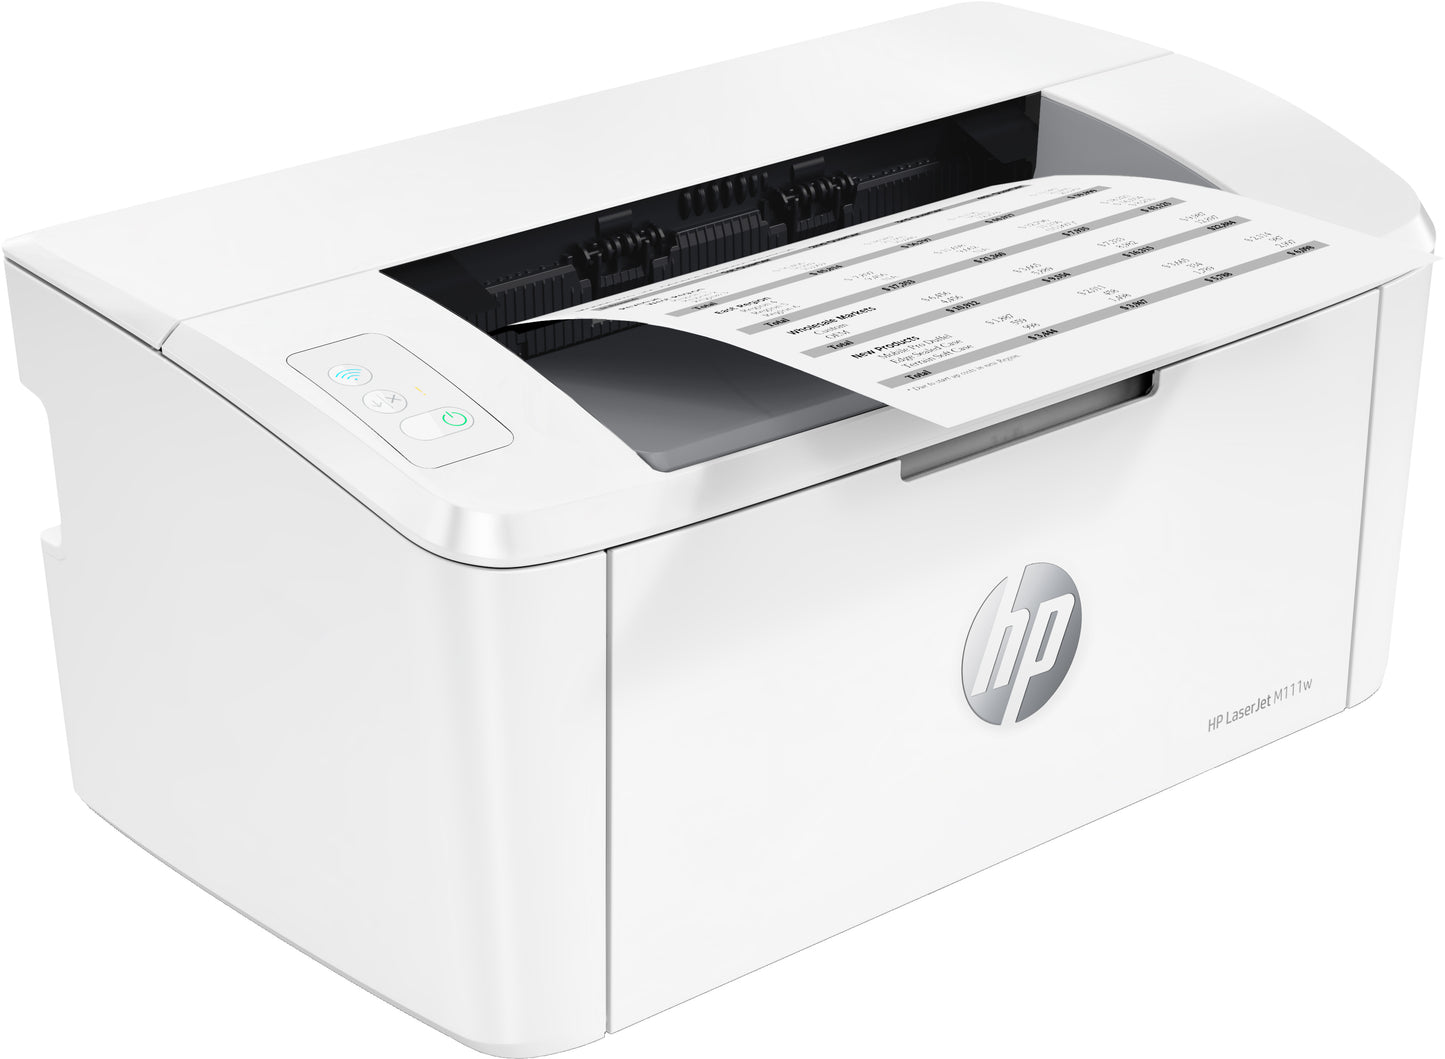 Impresora Láser Inalámbrico De Escritorio HP LaserJet M111w